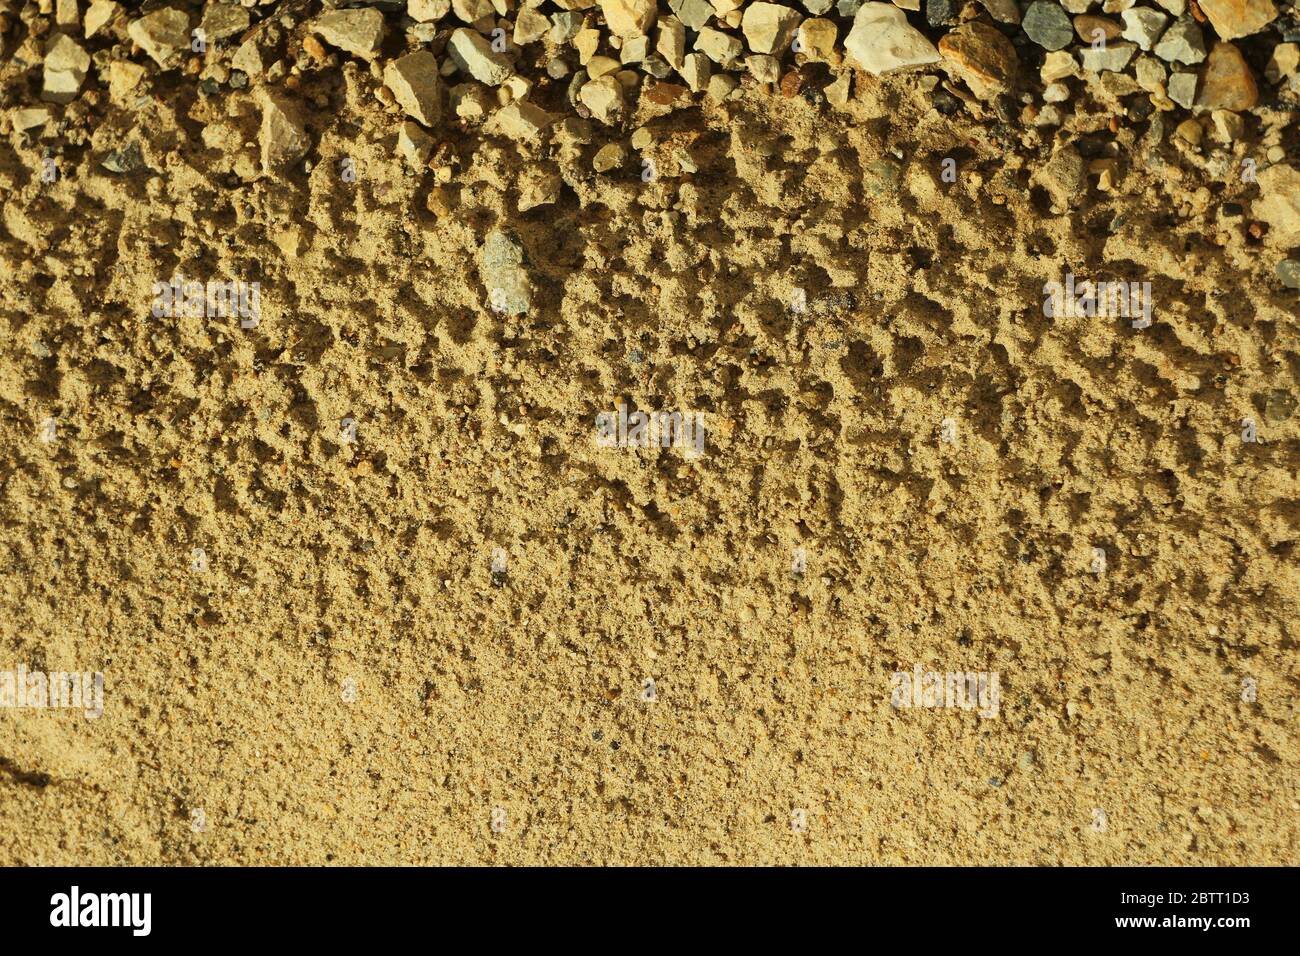 Sabbia con tracce di gocce d'acqua e piccole pietre. Spiaggia sul mare. La consistenza della sabbia, illuminata dal sole. Posiziona testo e sfondo per la progettazione. Foto Stock